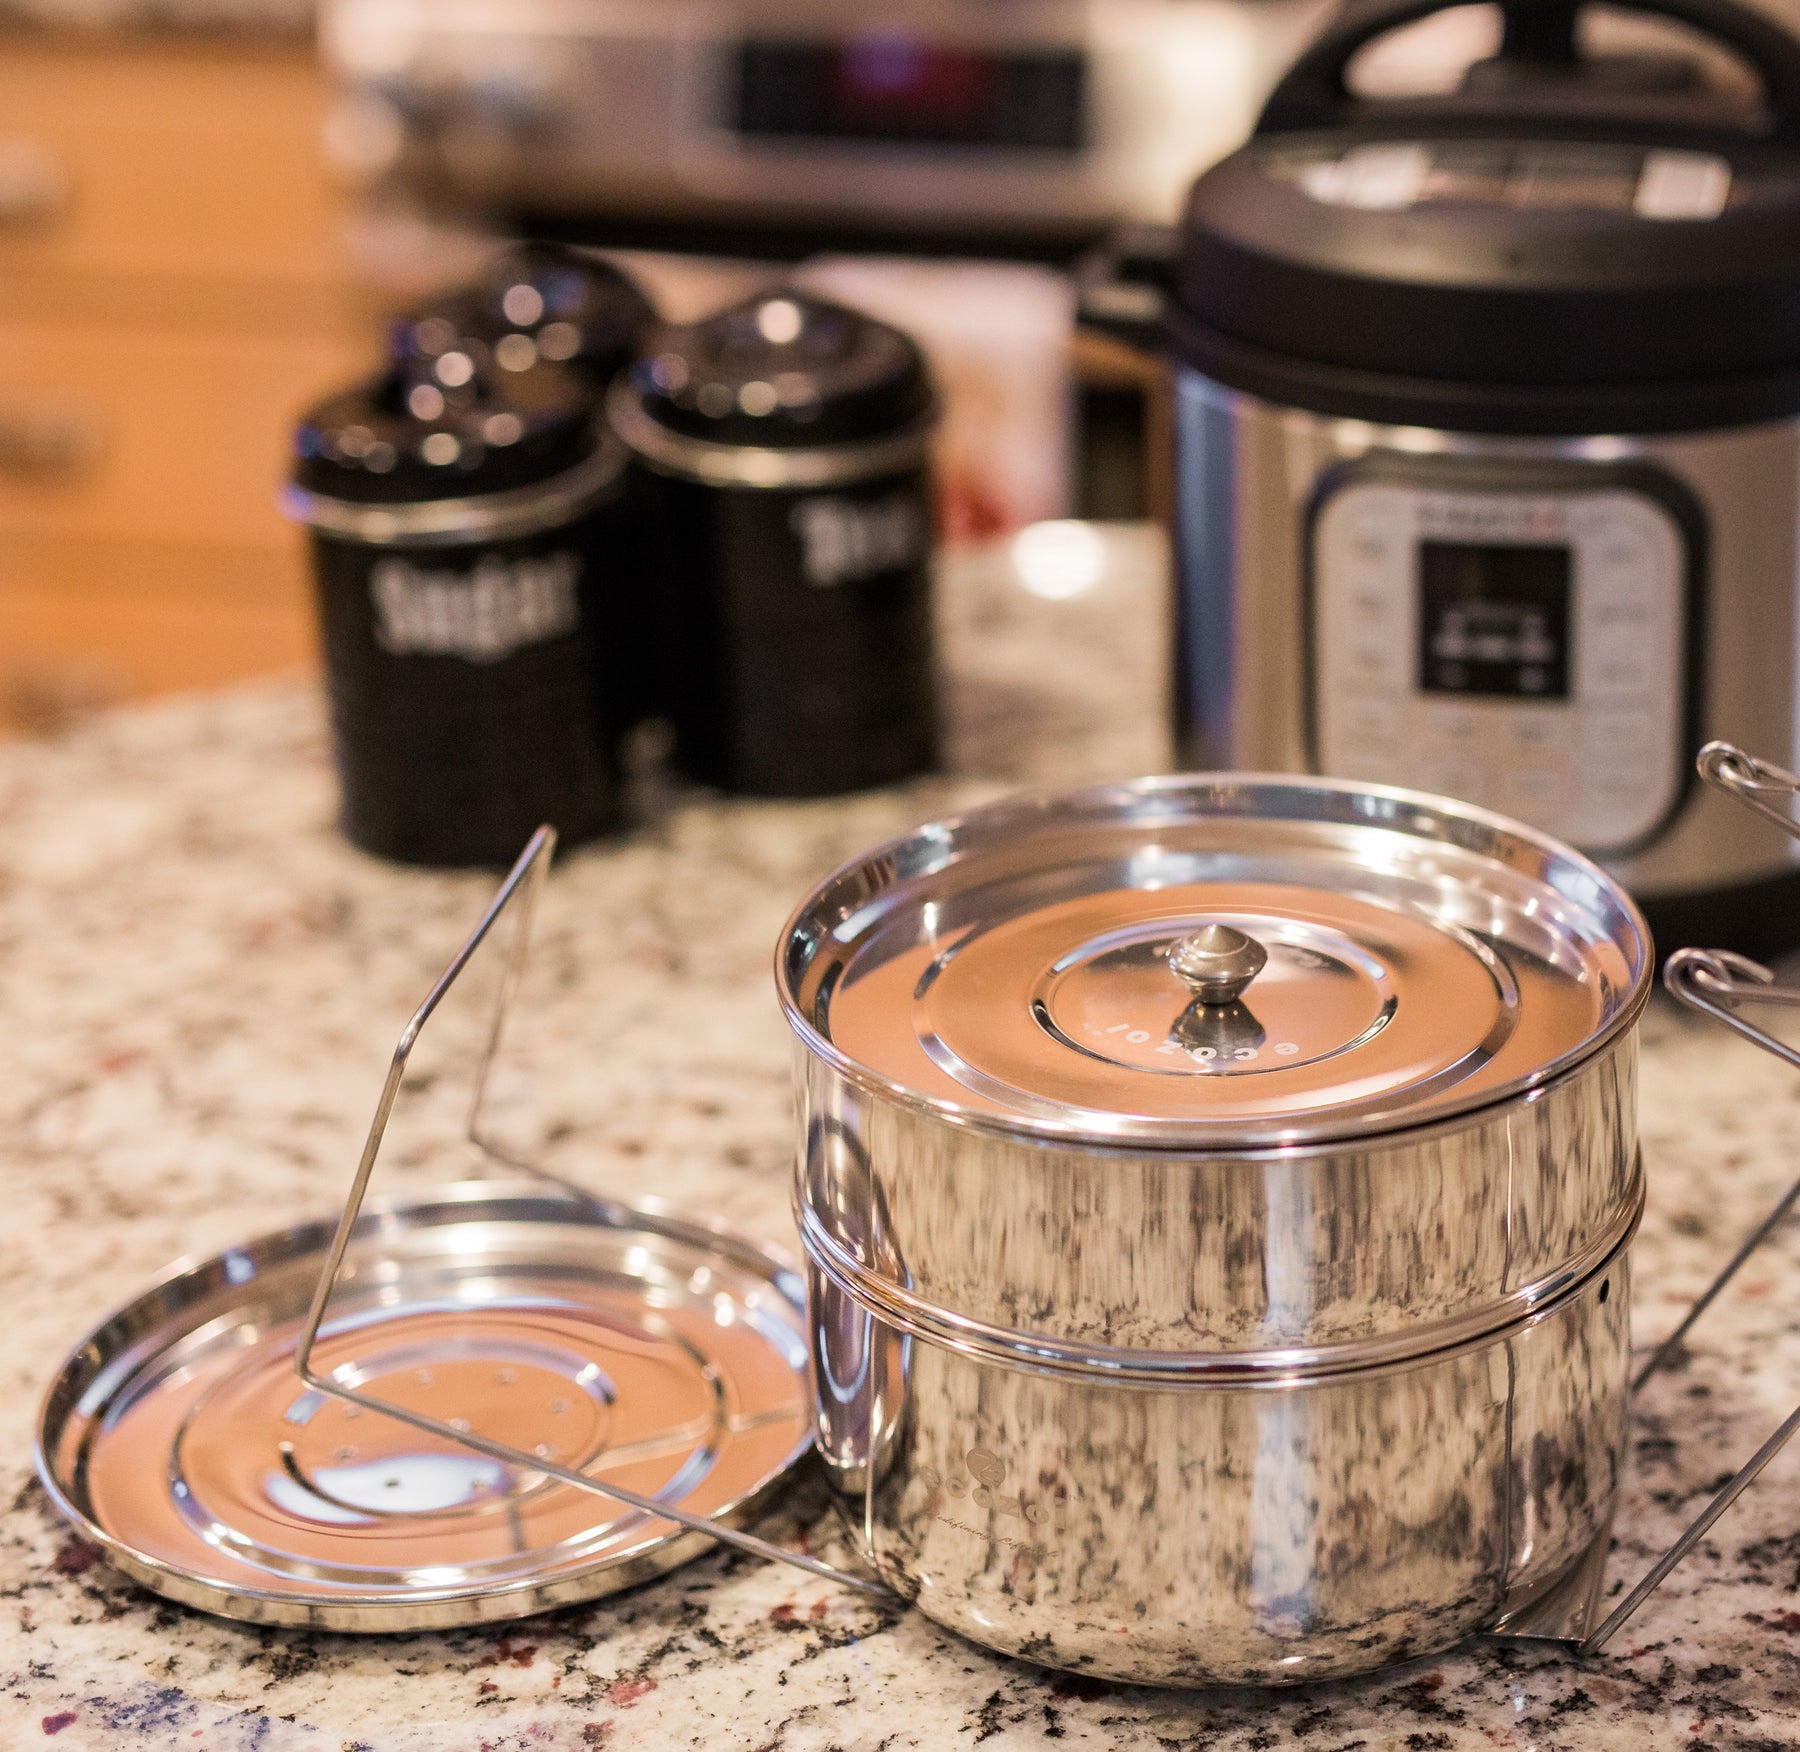 Instant Pot Insert Pans, 3 Tier for 6 Qt / 8 Qt Pressure Cookers 